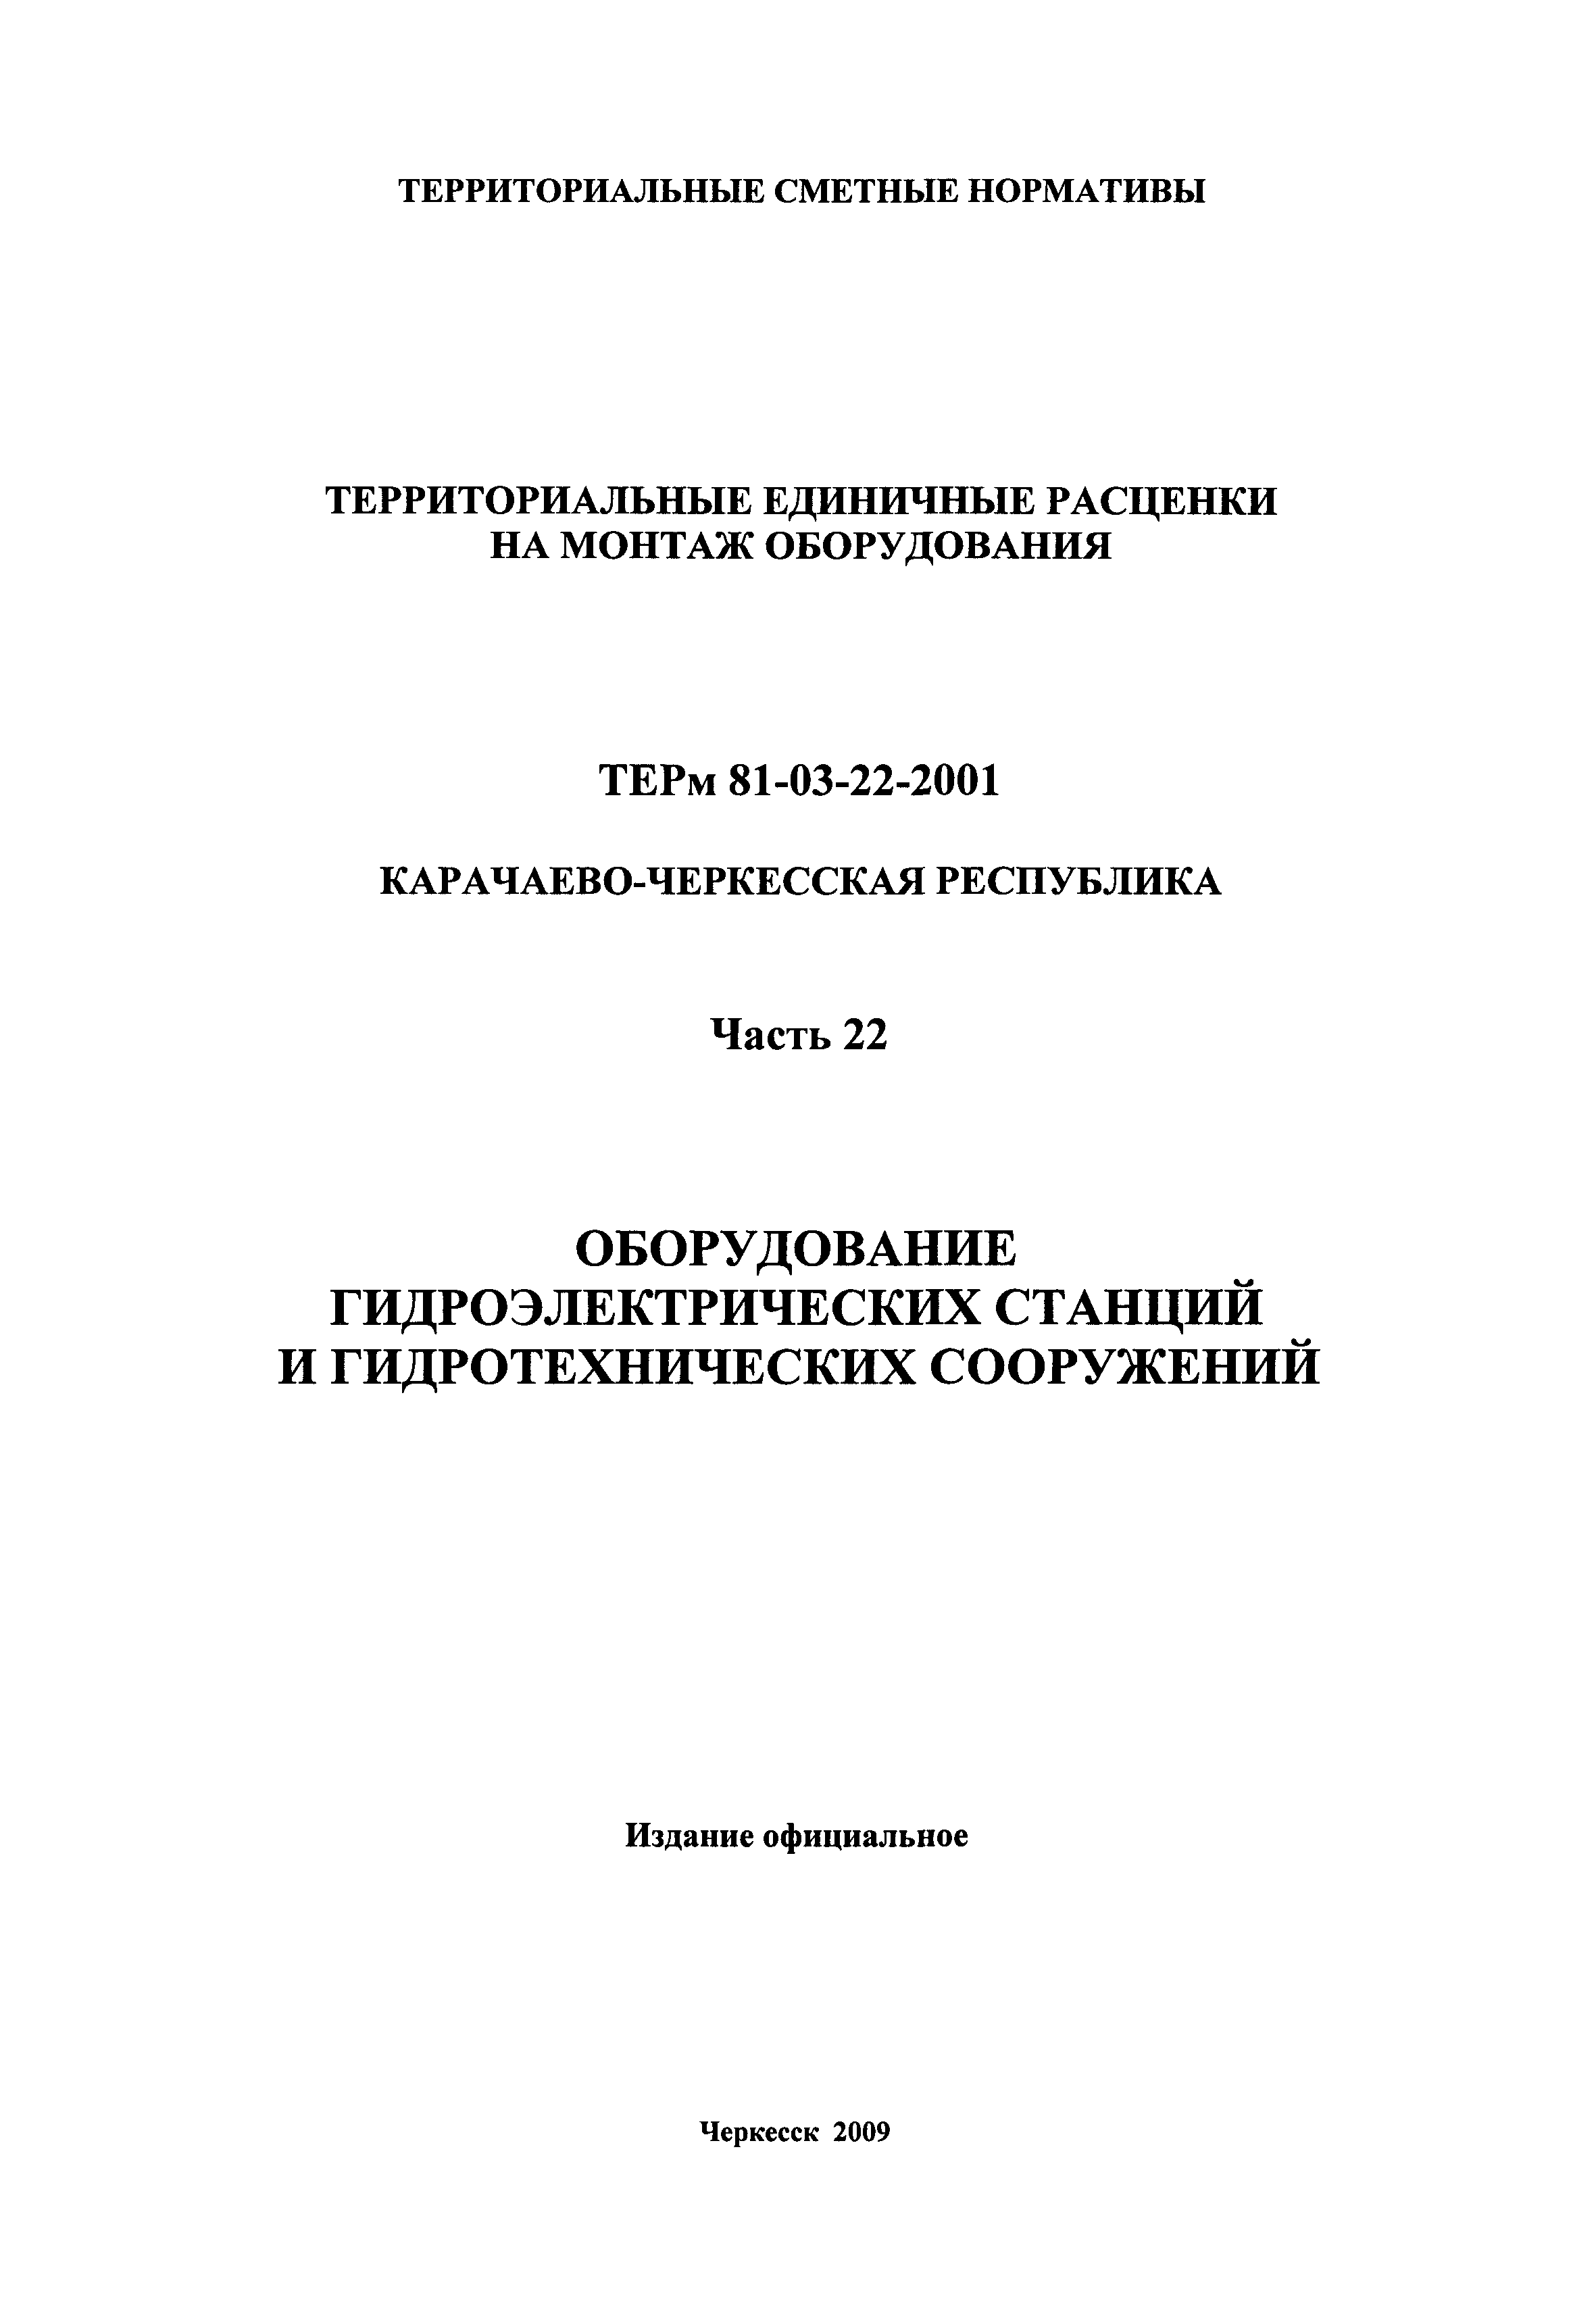 ТЕРм Карачаево-Черкесская Республика 22-2001